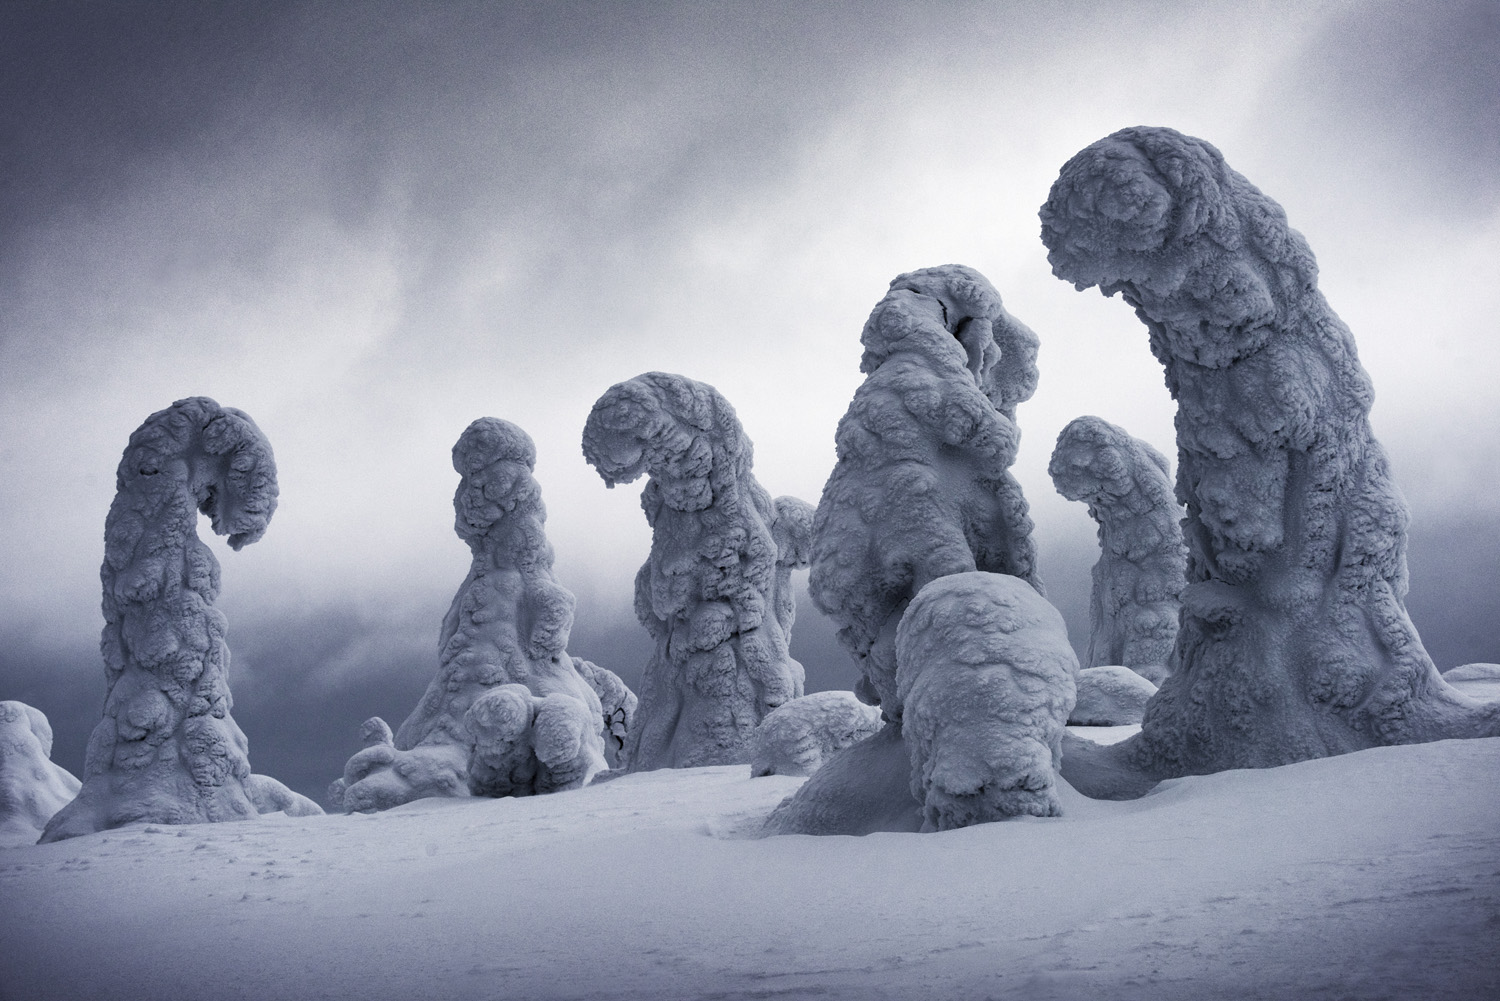 Frozen giants in Finland